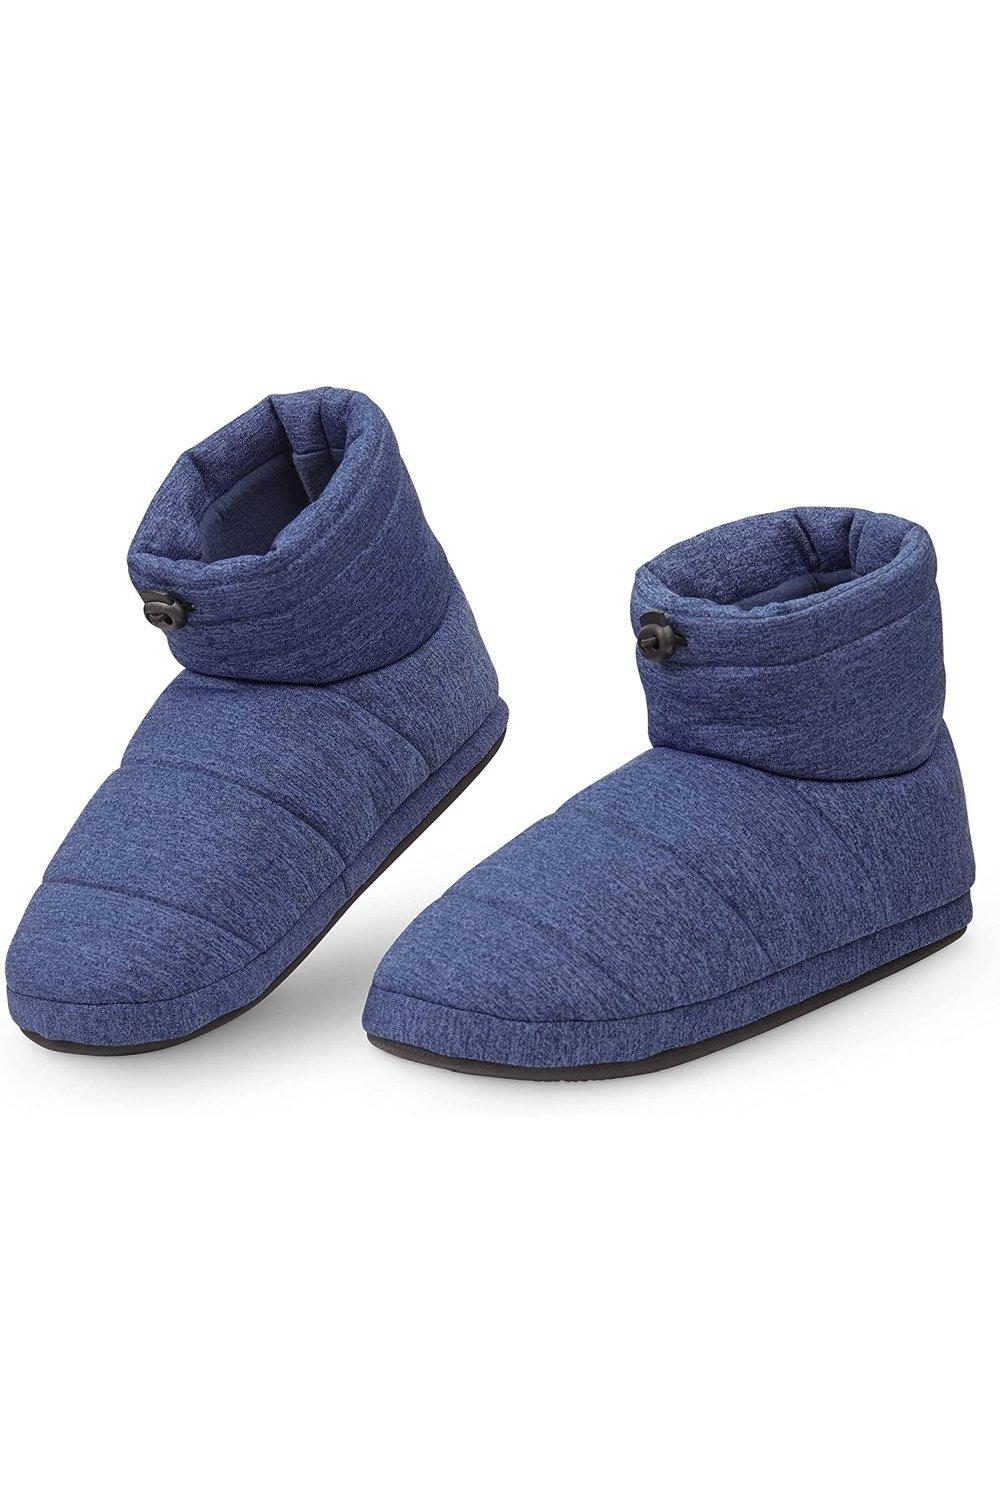 Тапочки-сапожки Dunlop, синий мужские пушистые тапочки домашние зимние разноцветные противоскользящие плюшевые мягкие удобные мужские повседневные домашние туфли на